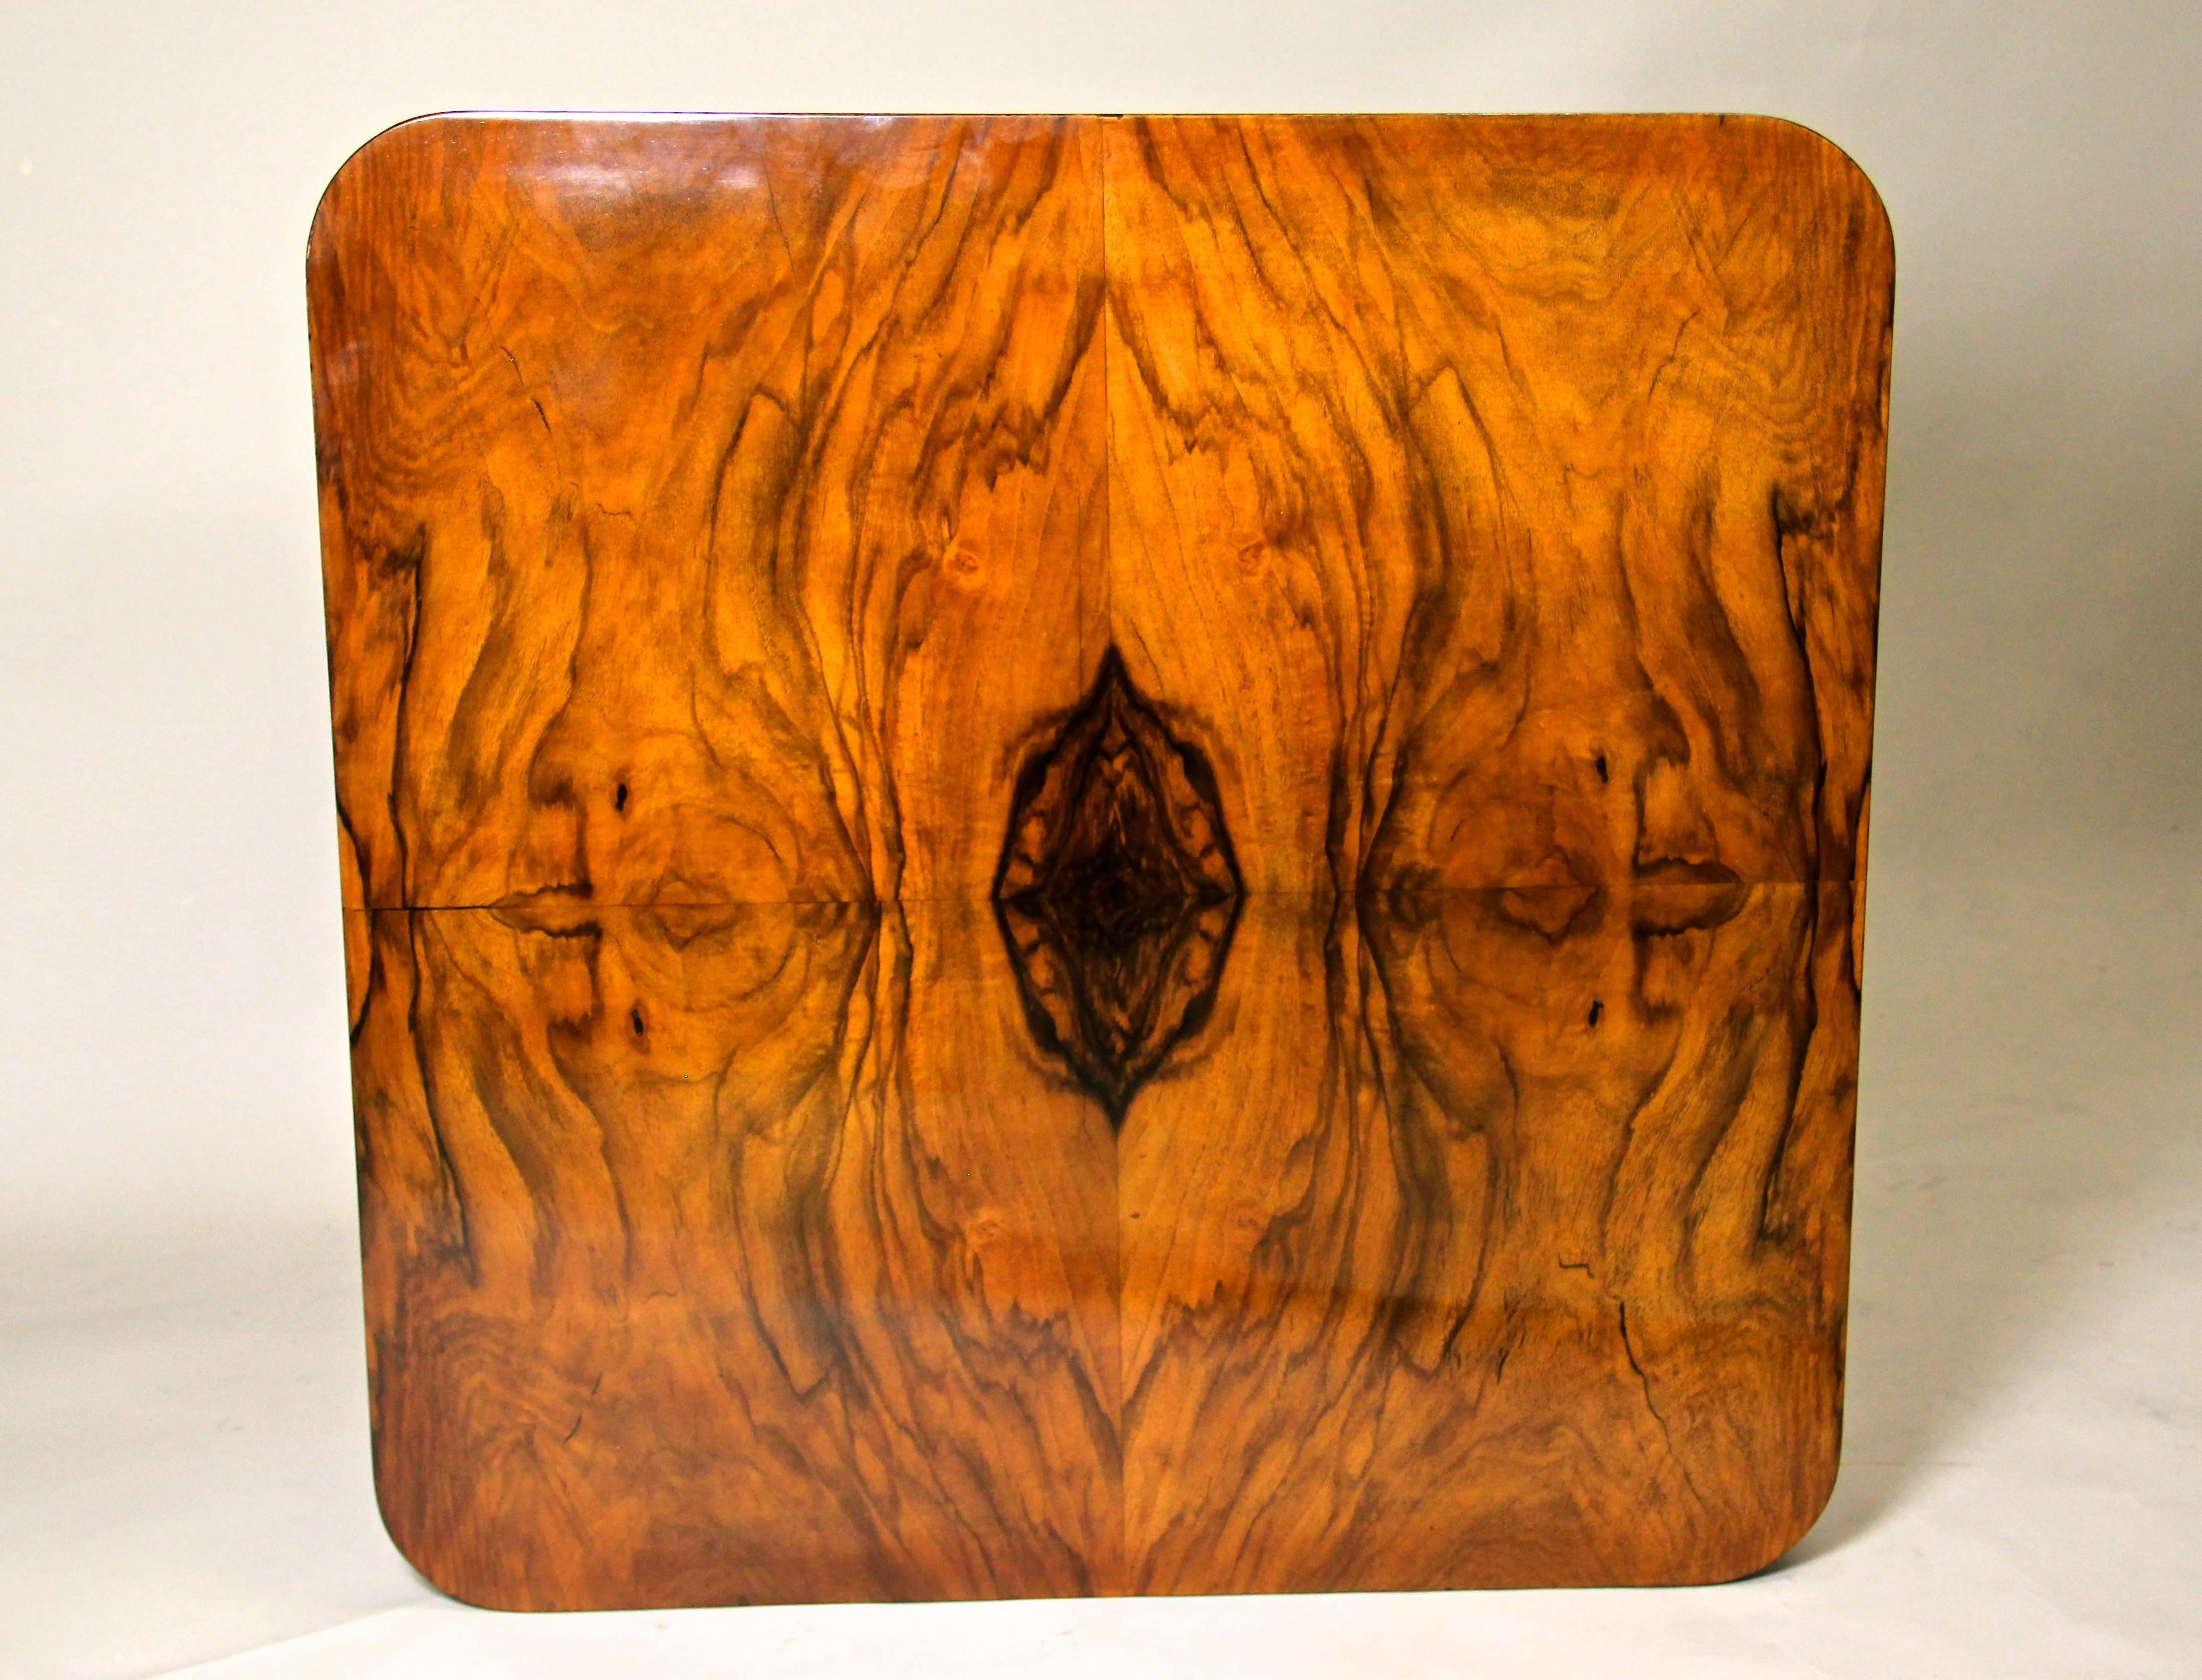 Belle table basse/latérale Art Déco d'époque en Autriche, vers 1920. Cette table Art déco unique en son genre impressionne par son magnifique design de 